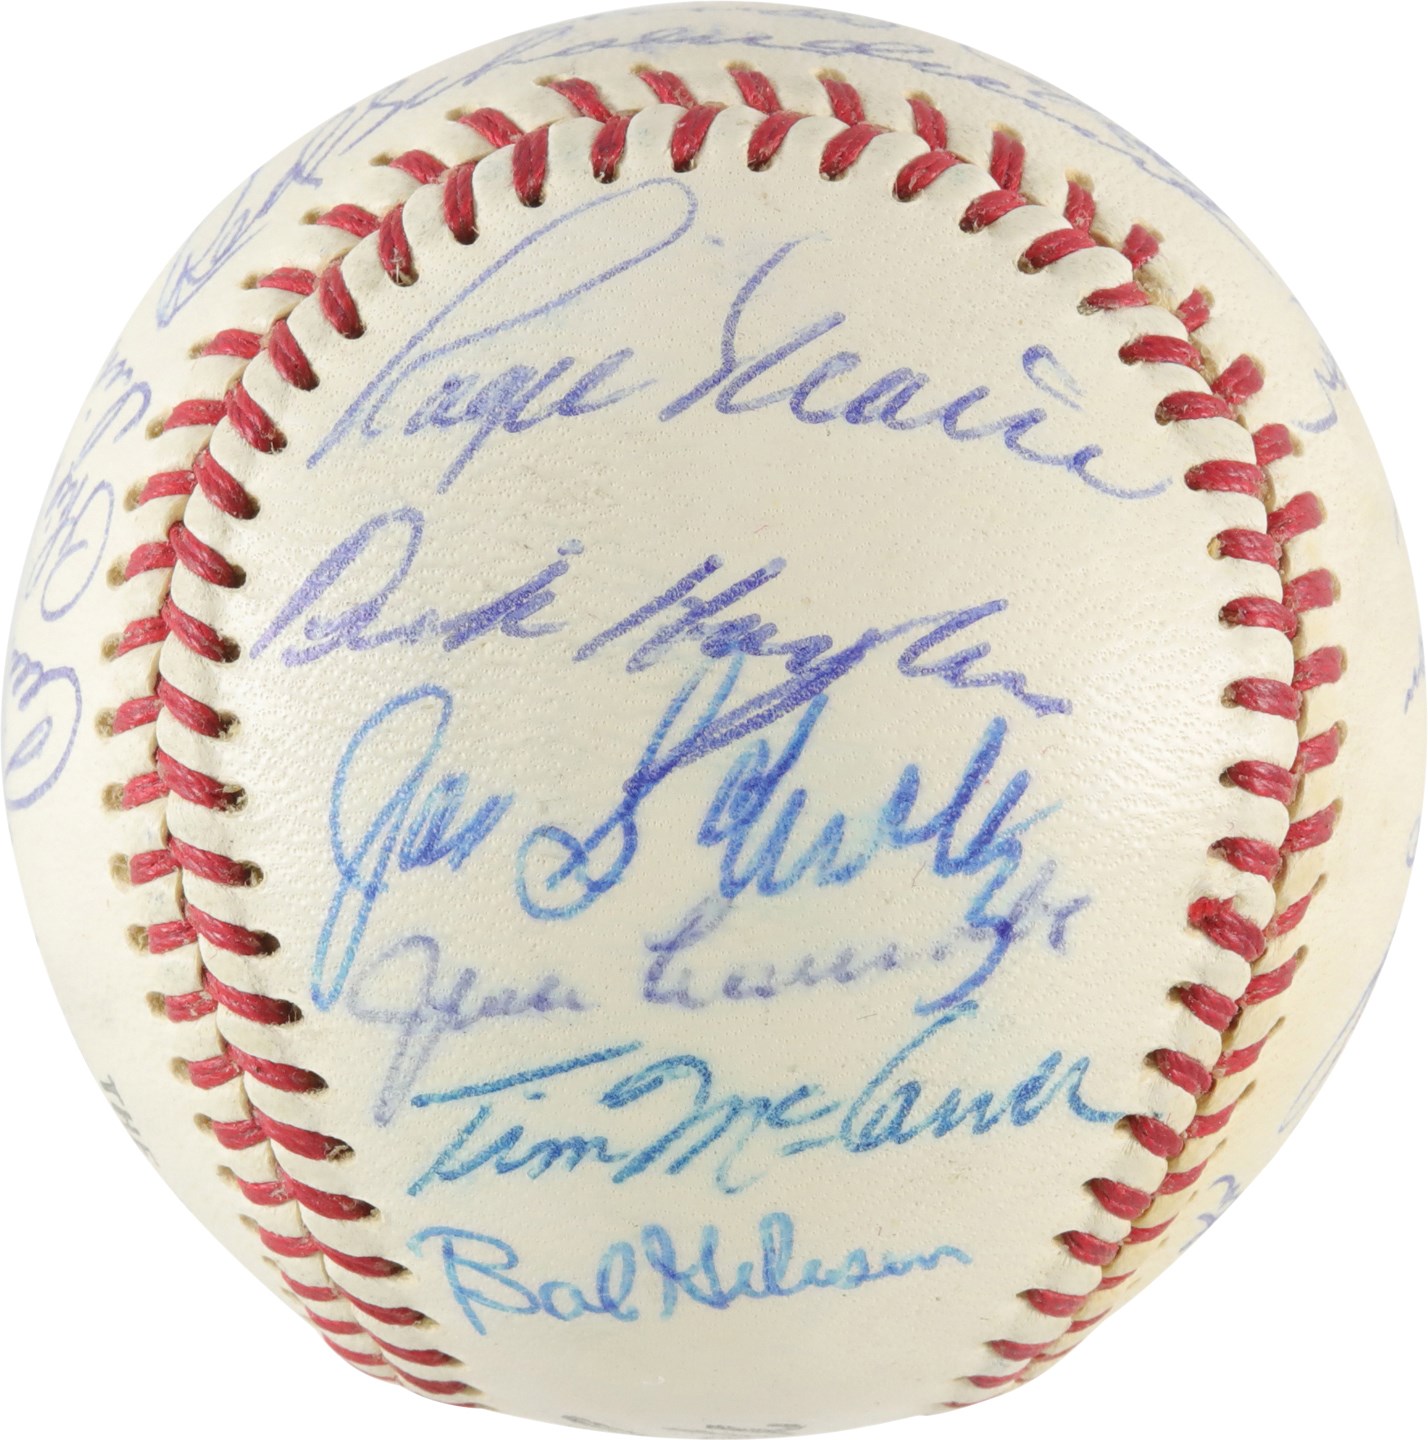 - High Grade 1967 World Champion St. Louis Cardinals Team-Signed Baseball (PSA)